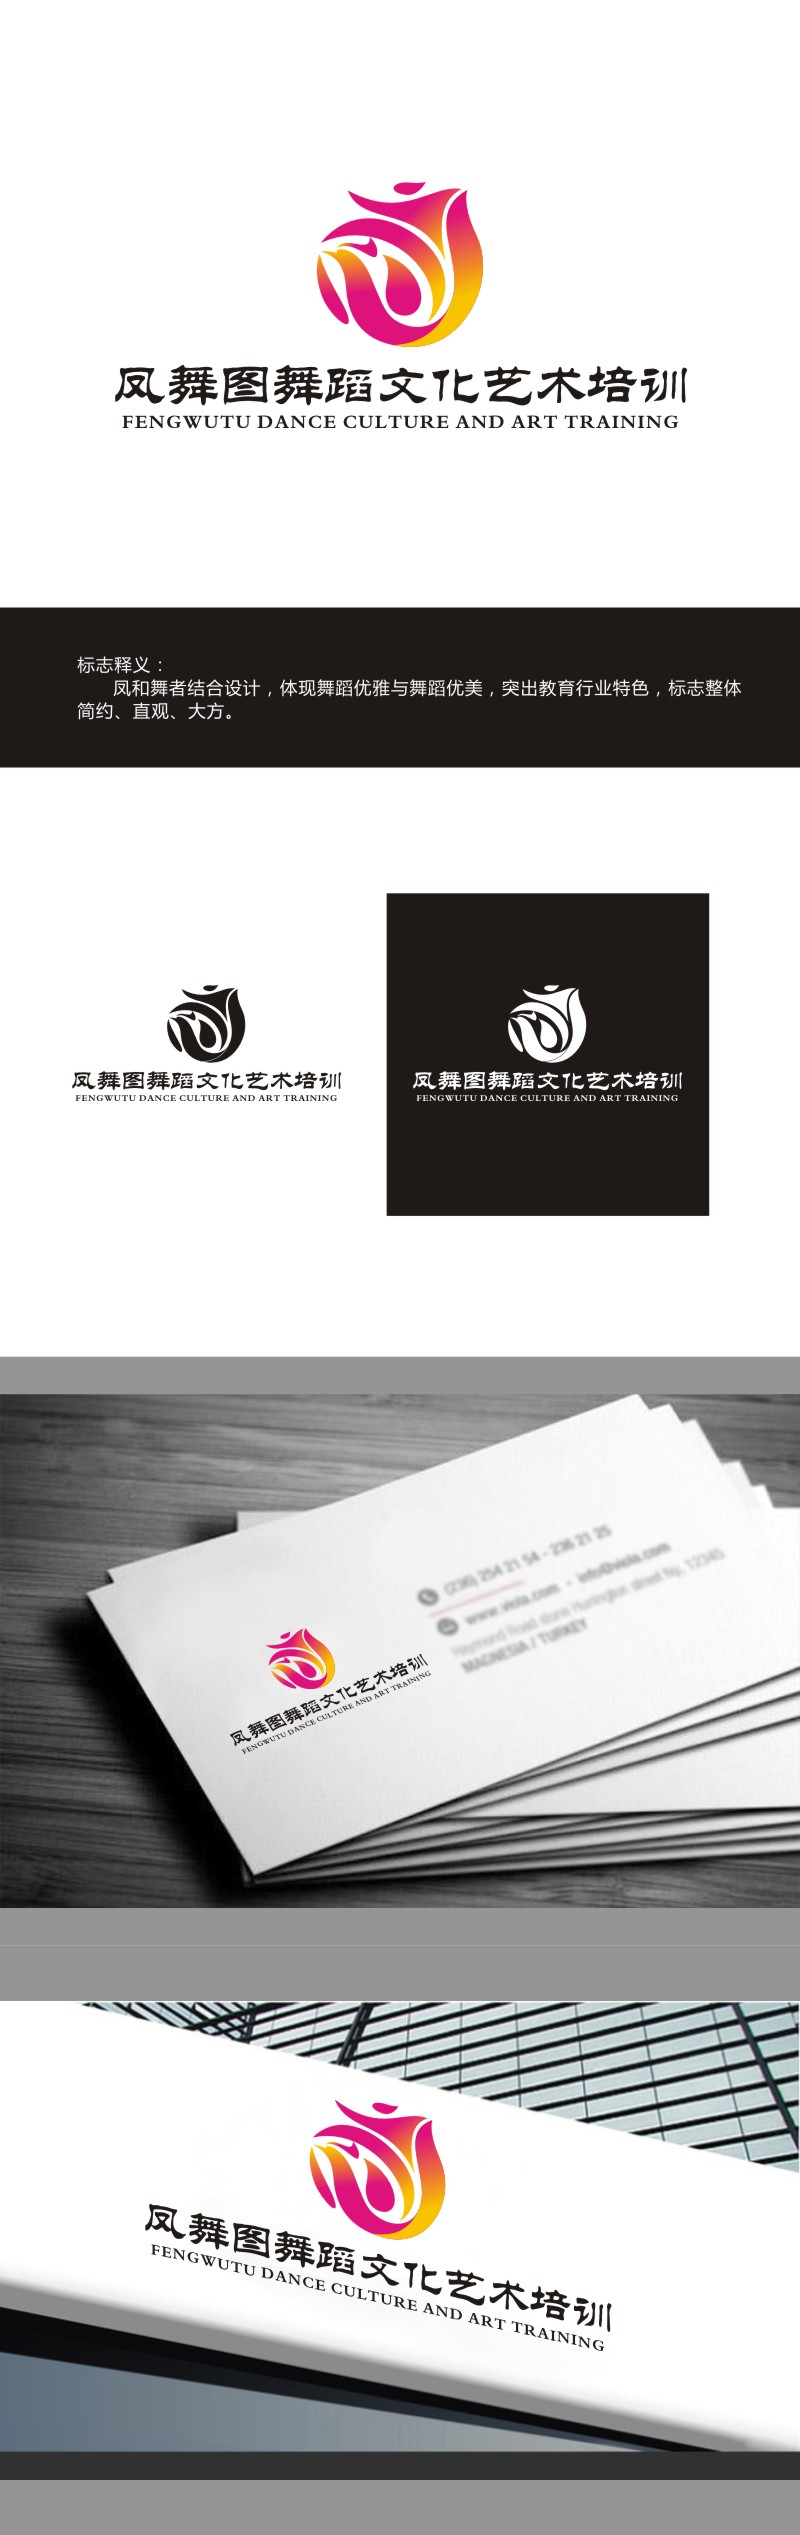 曾翼的深圳市凤舞图舞蹈文化艺术培训有限公司logo设计